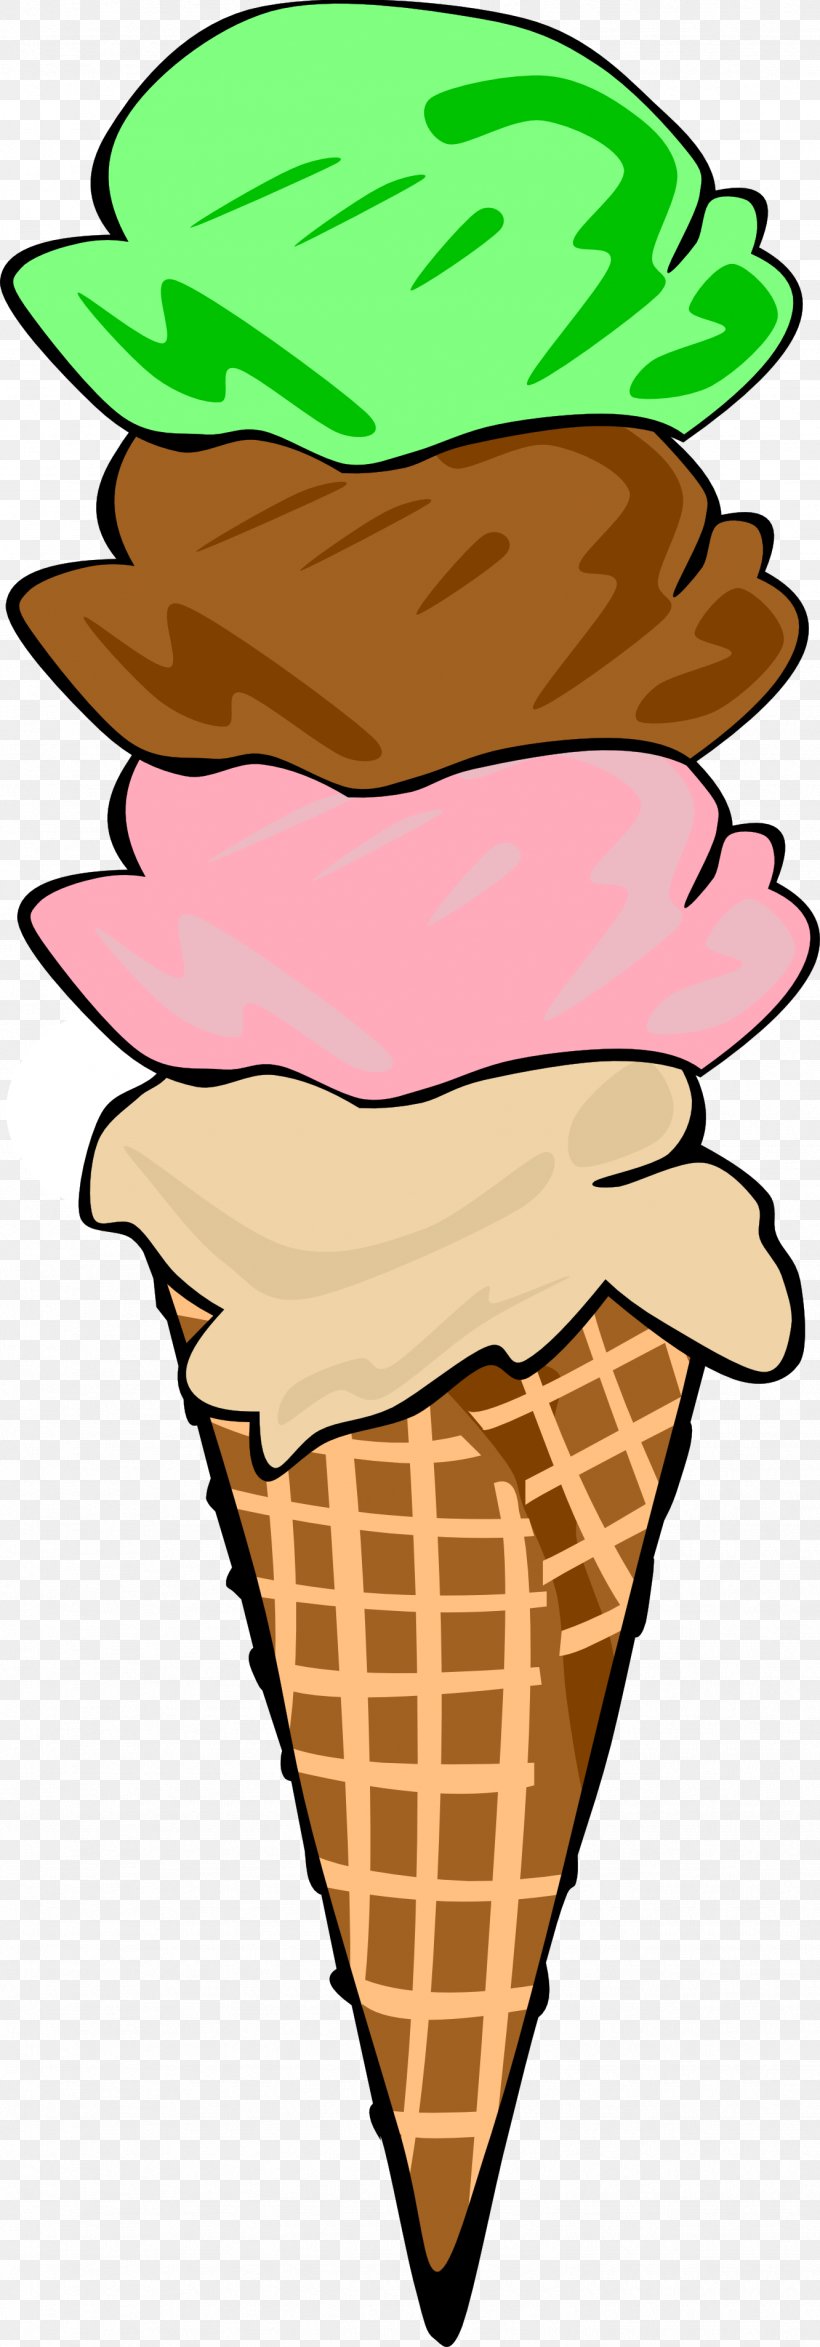 Ice Cream Cone Sundae Clip Art, PNG, 1332x3814px, Ice Cream, Chocolate Ice Cream, Cream, Food, Free Content Download Free